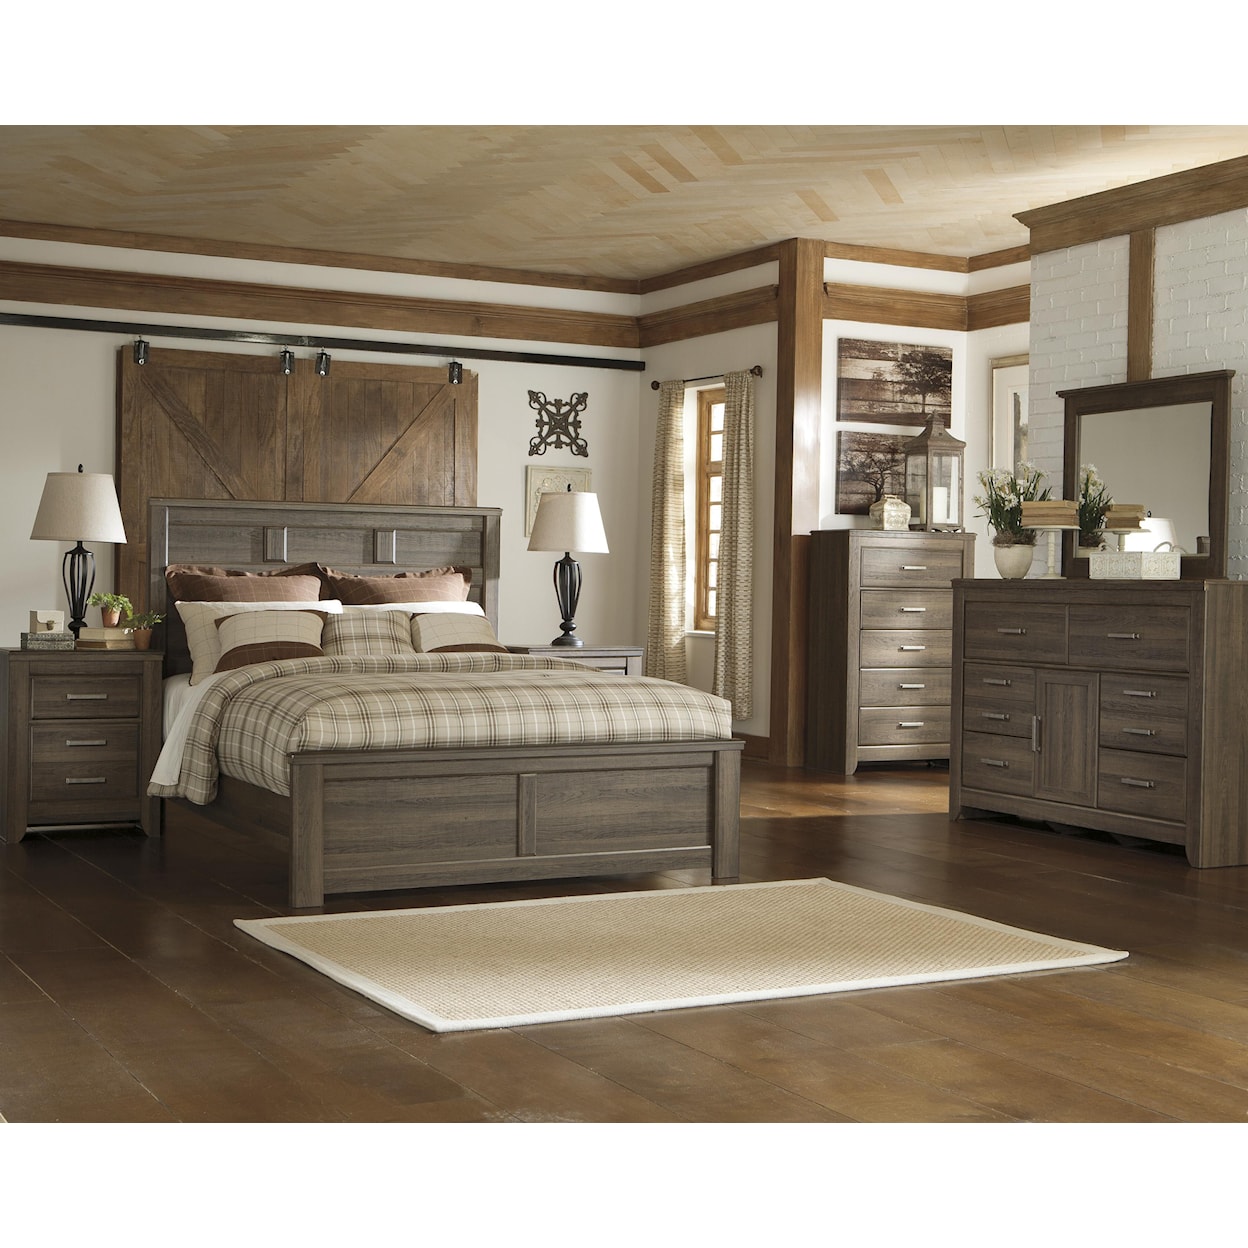 Ashley Furniture Signature Design Juararo Dresser and Mirror Set